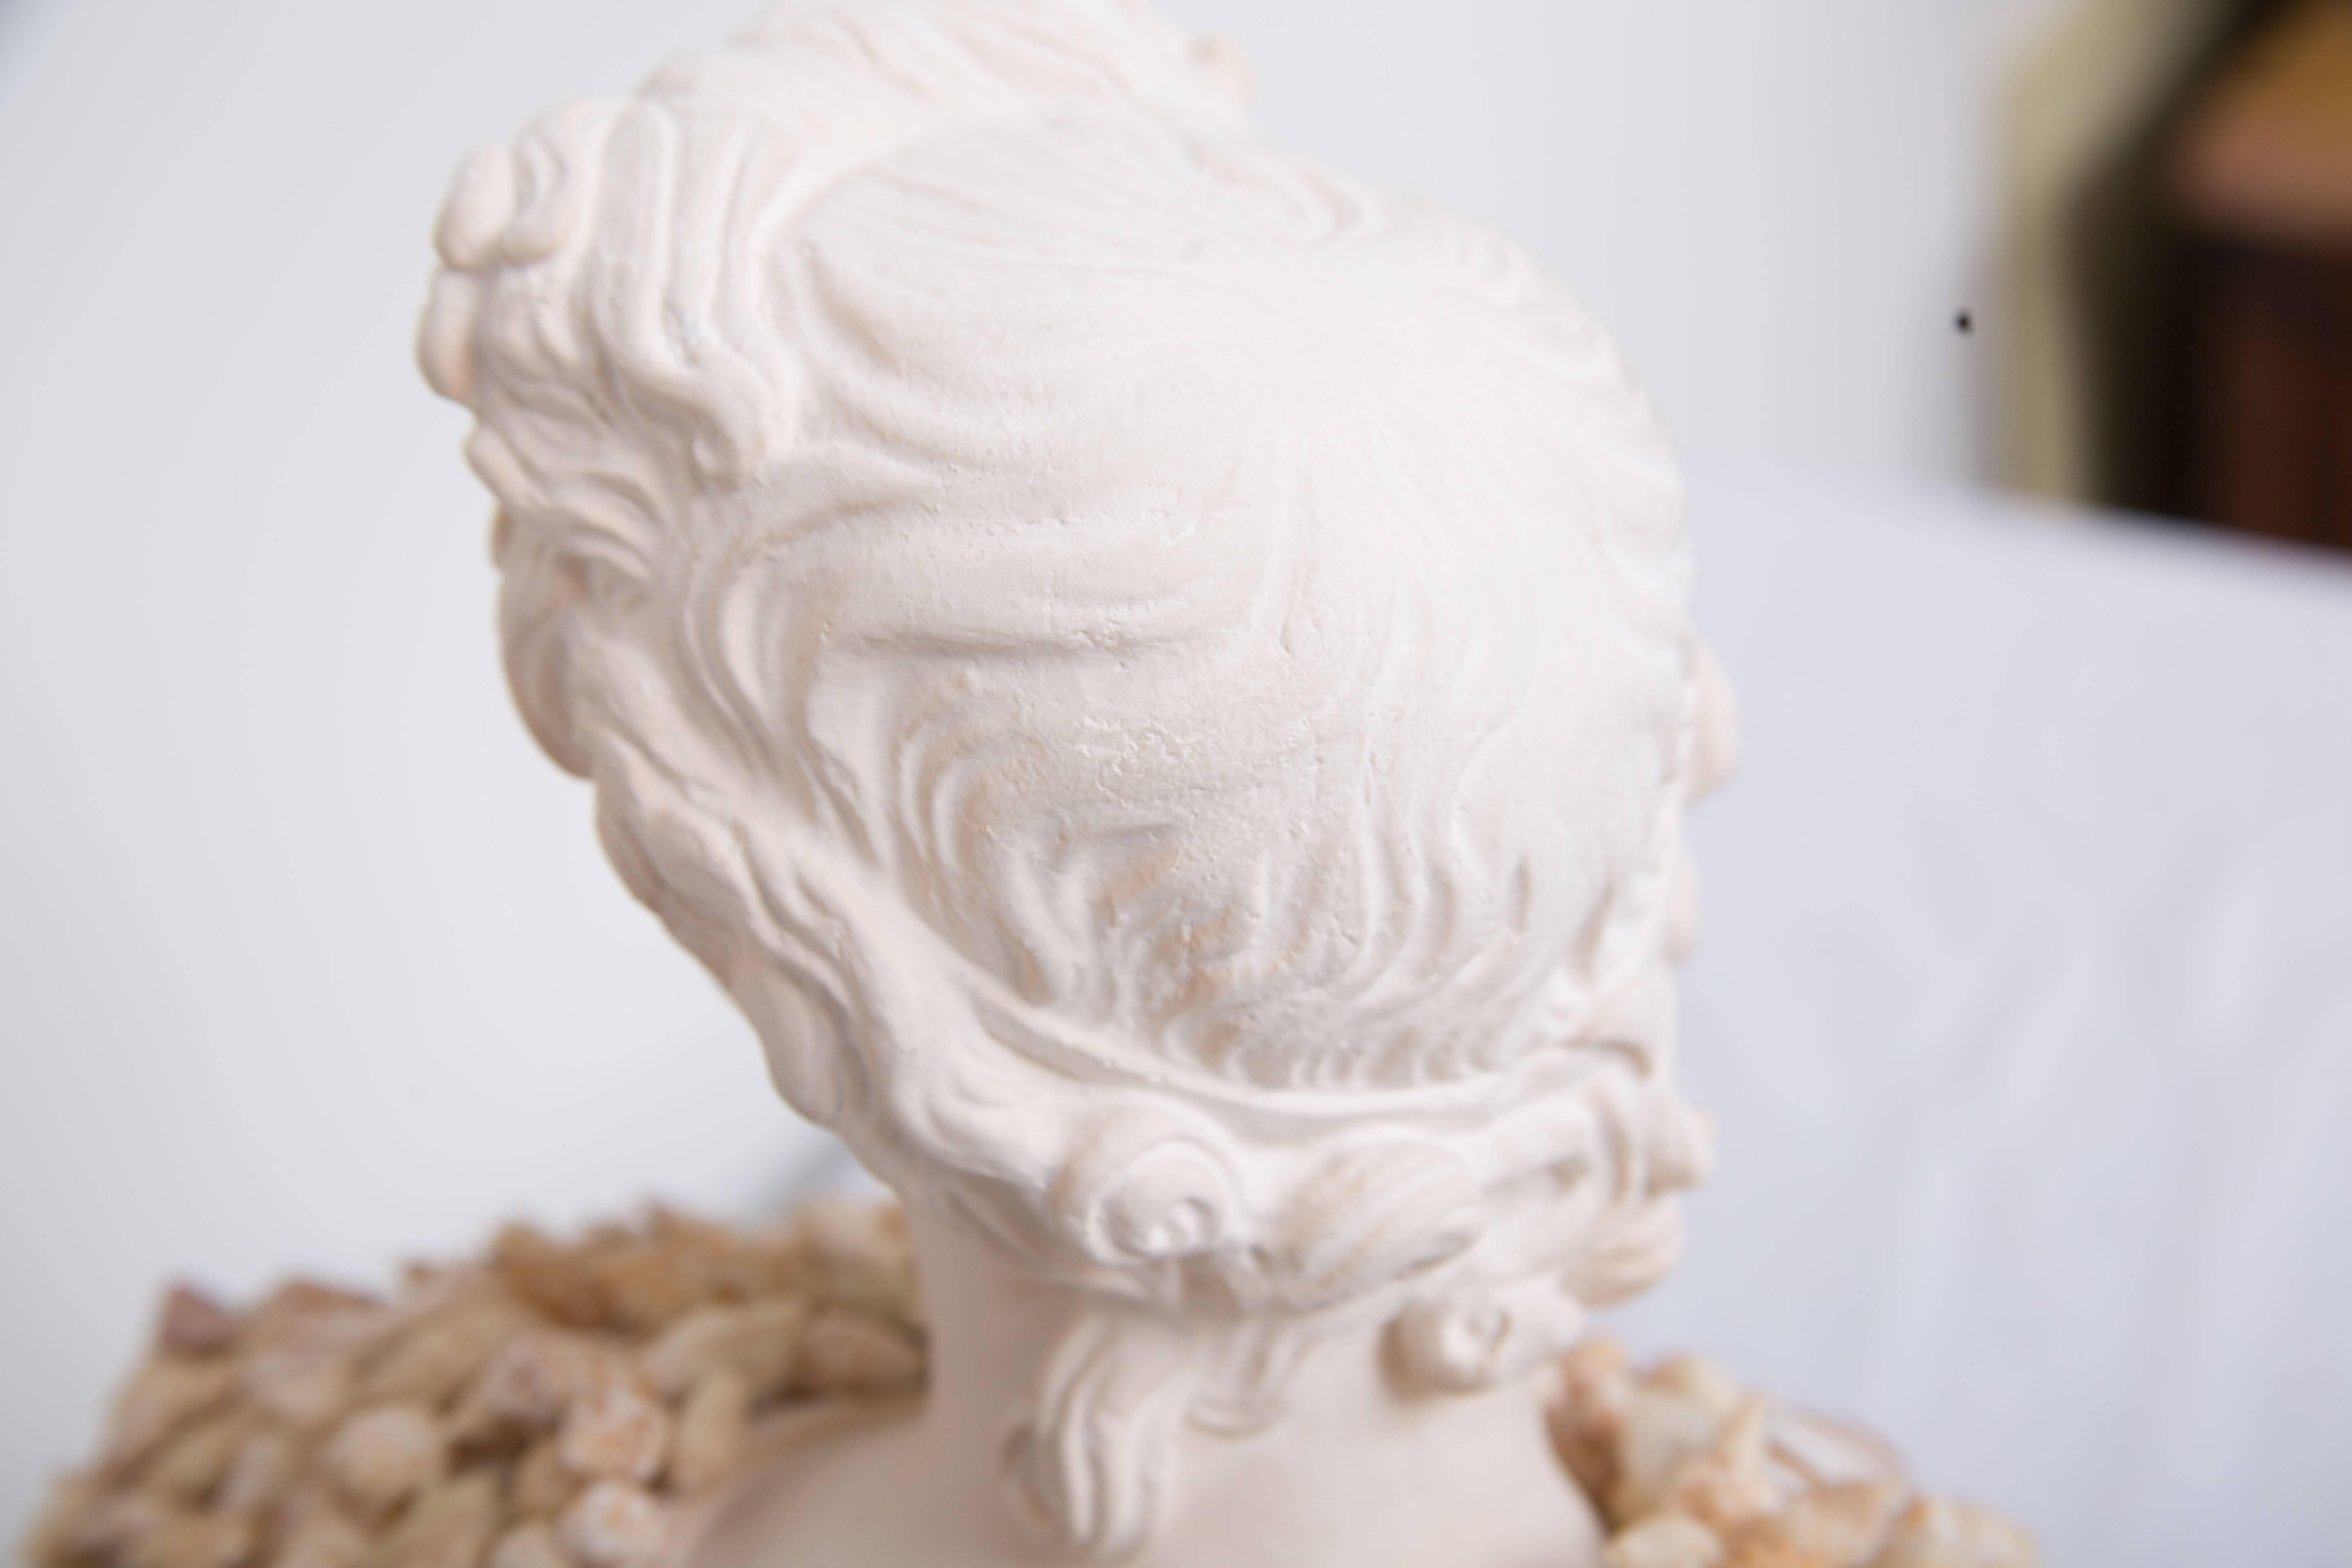 Ce buste de composition d'une figure classique a été mis en valeur par l'application moderne de coquillages, vers le 21e siècle.